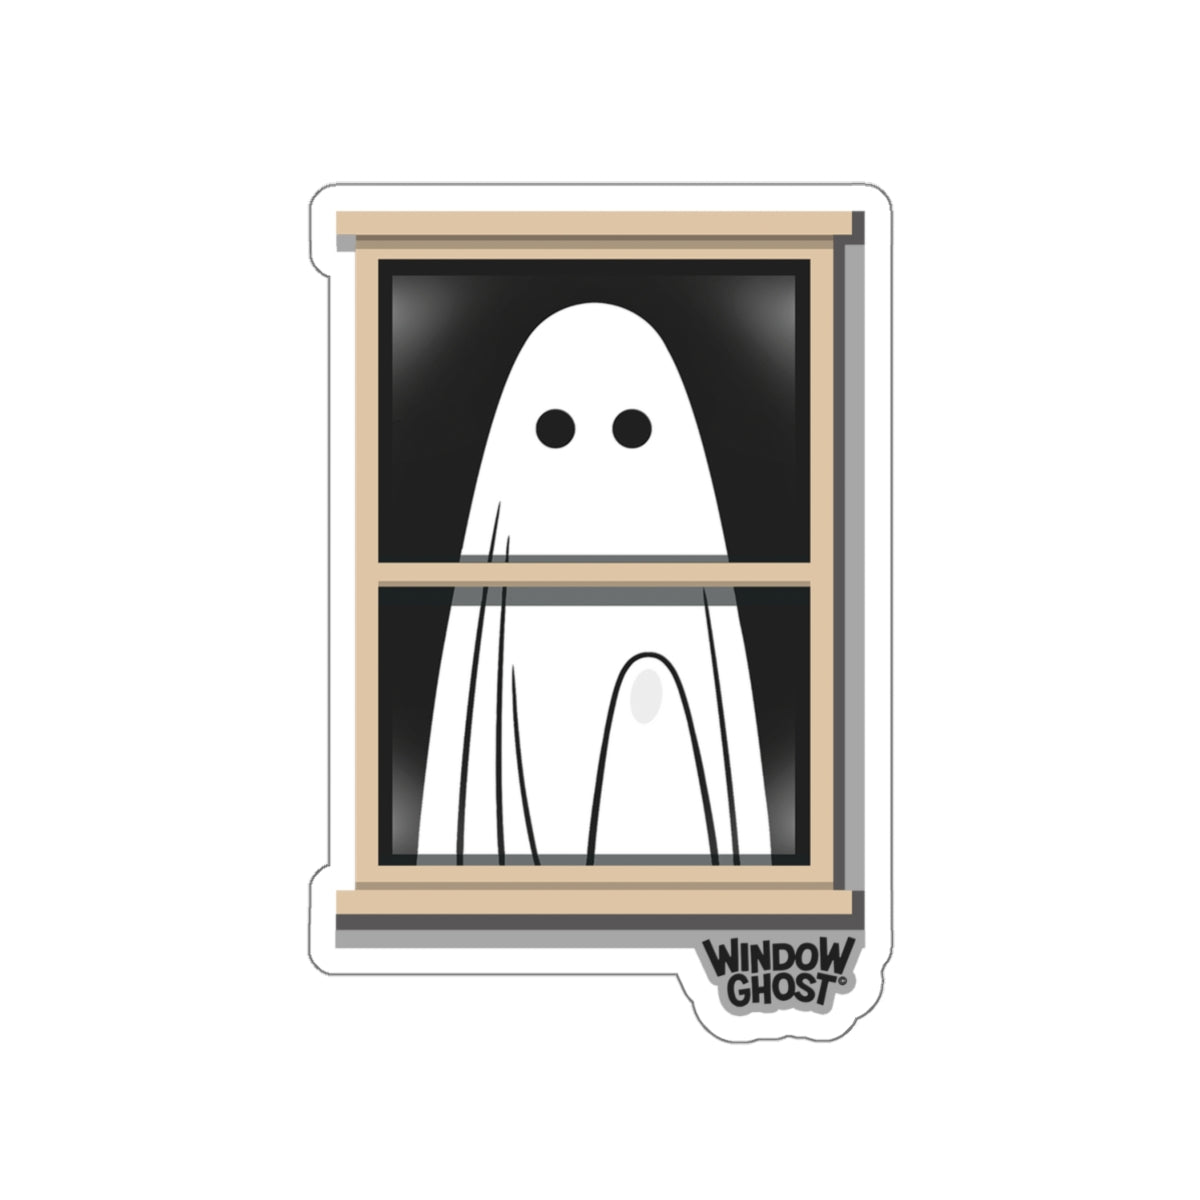 Window Ghost© Original sticker